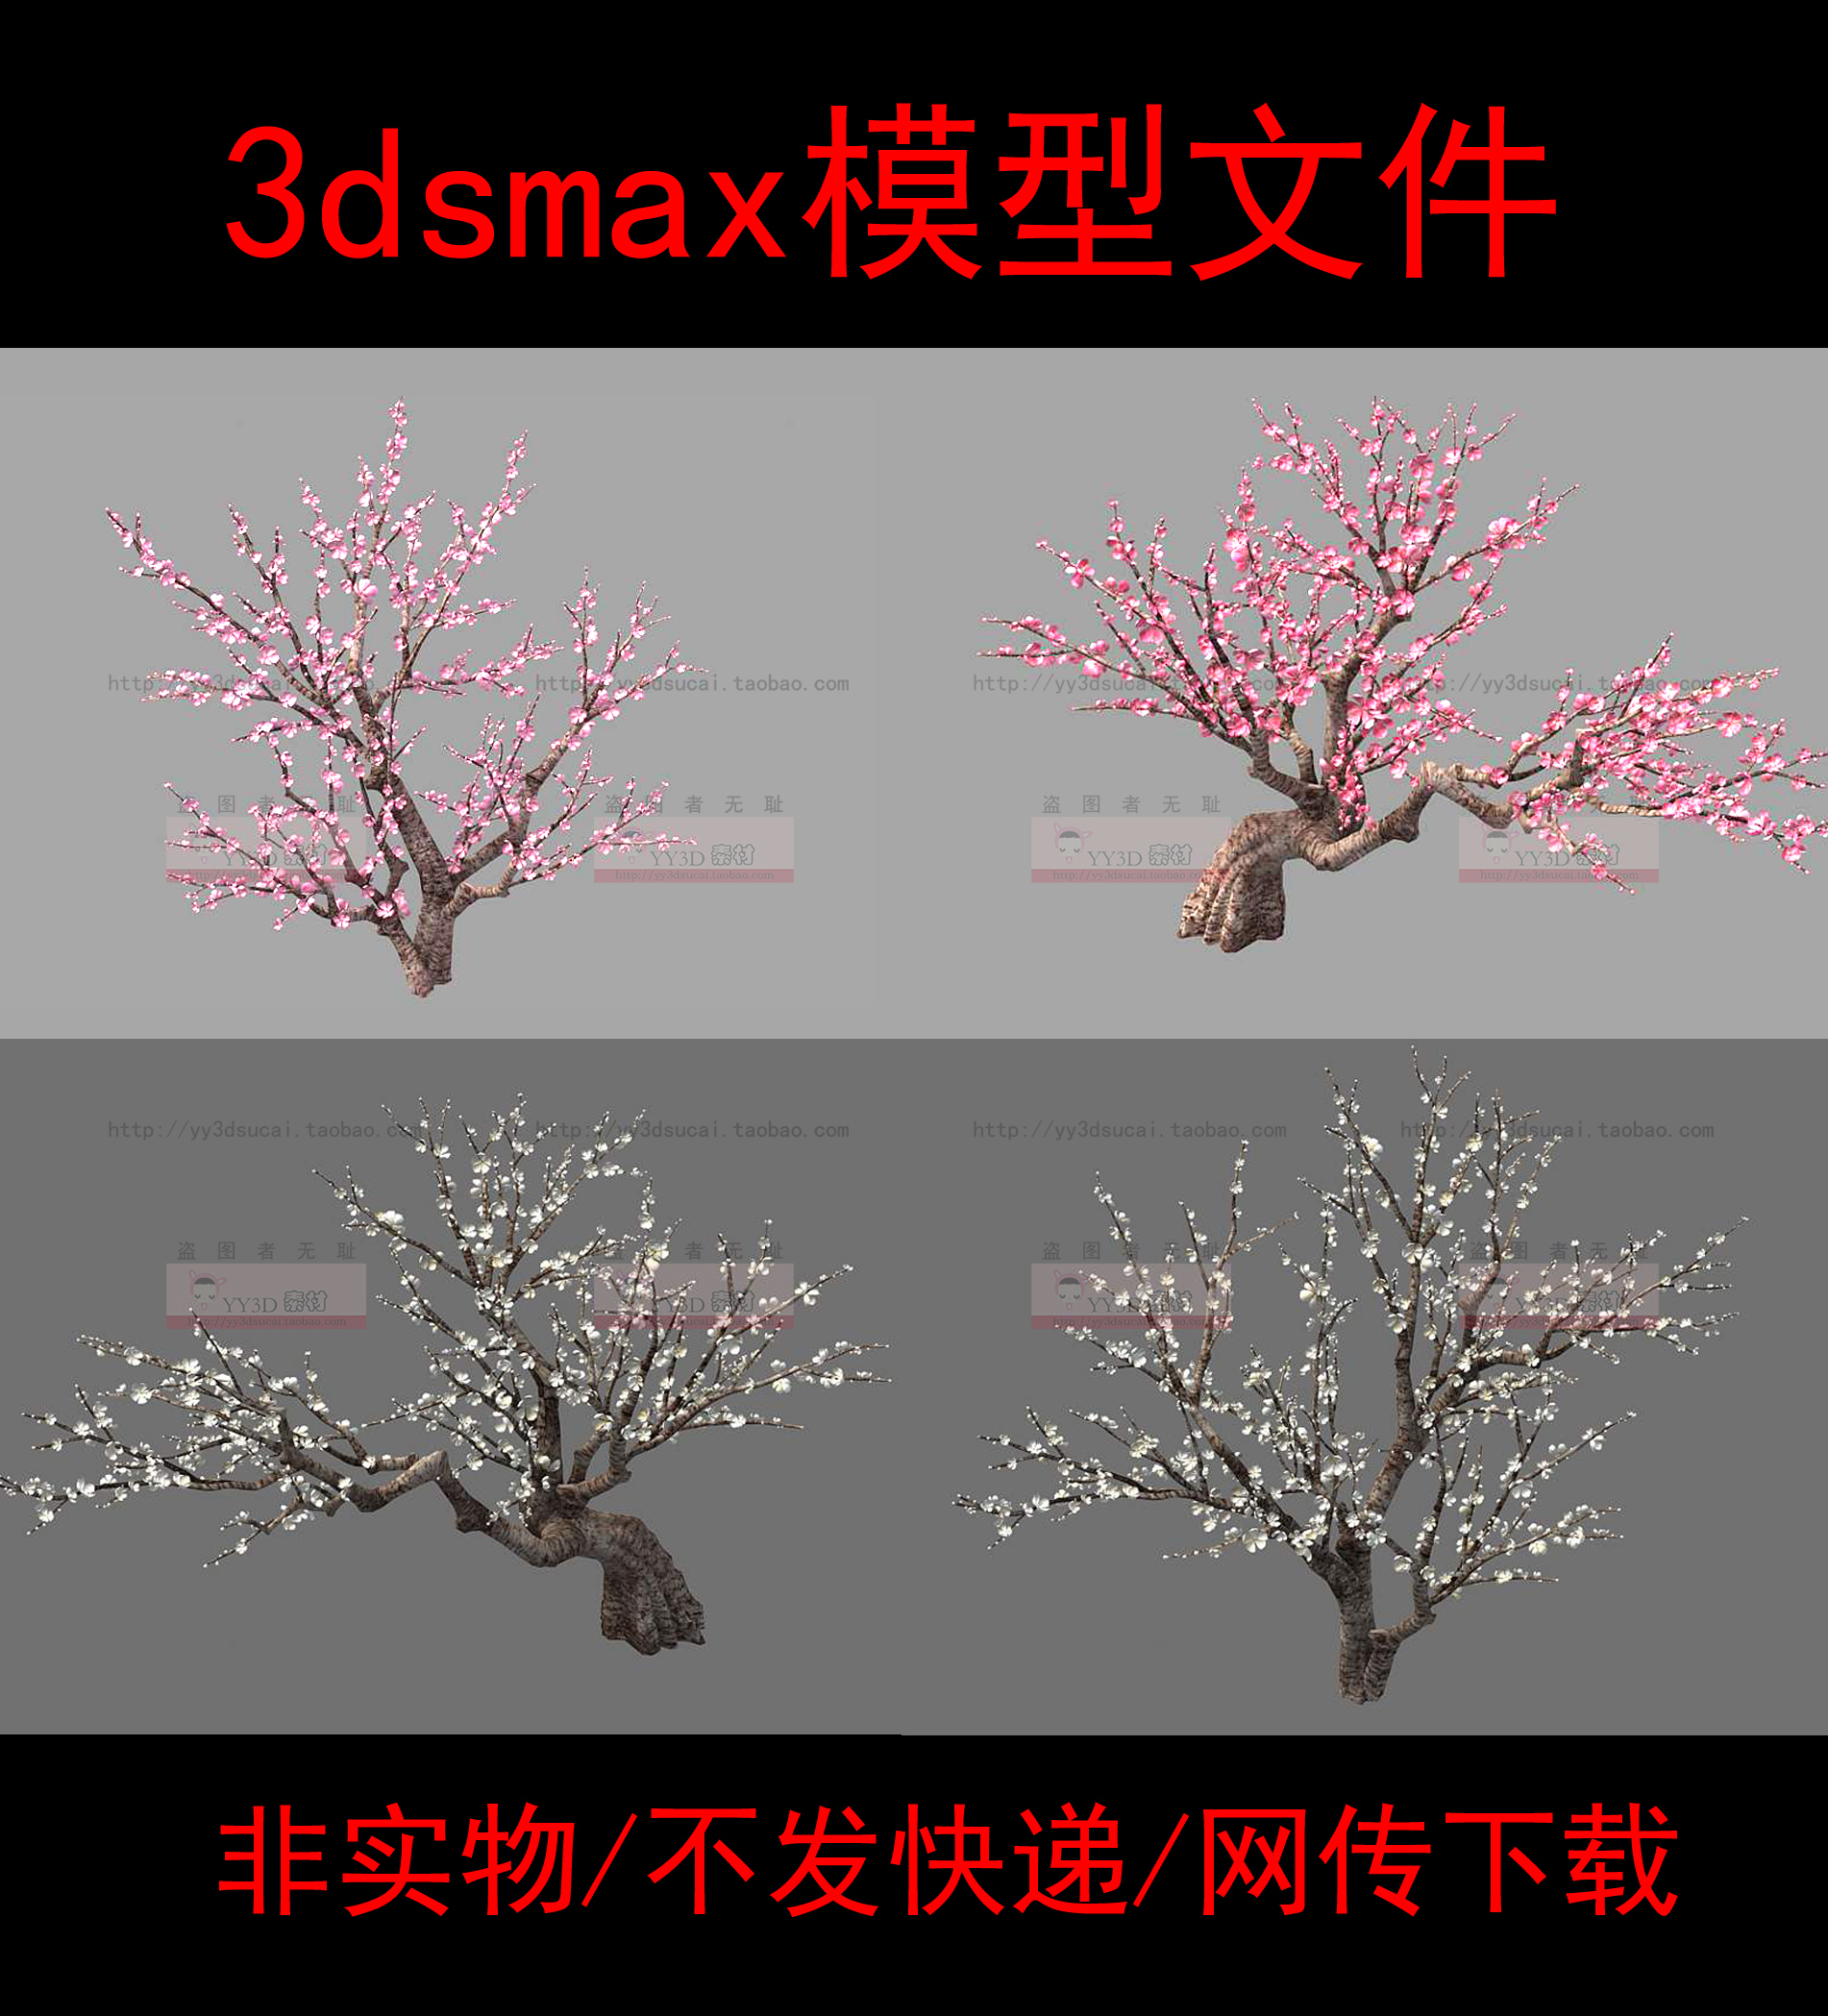 非实物/不发快递/桃树3d模型/桃花树桃花3dsmax模型/桃树max模型